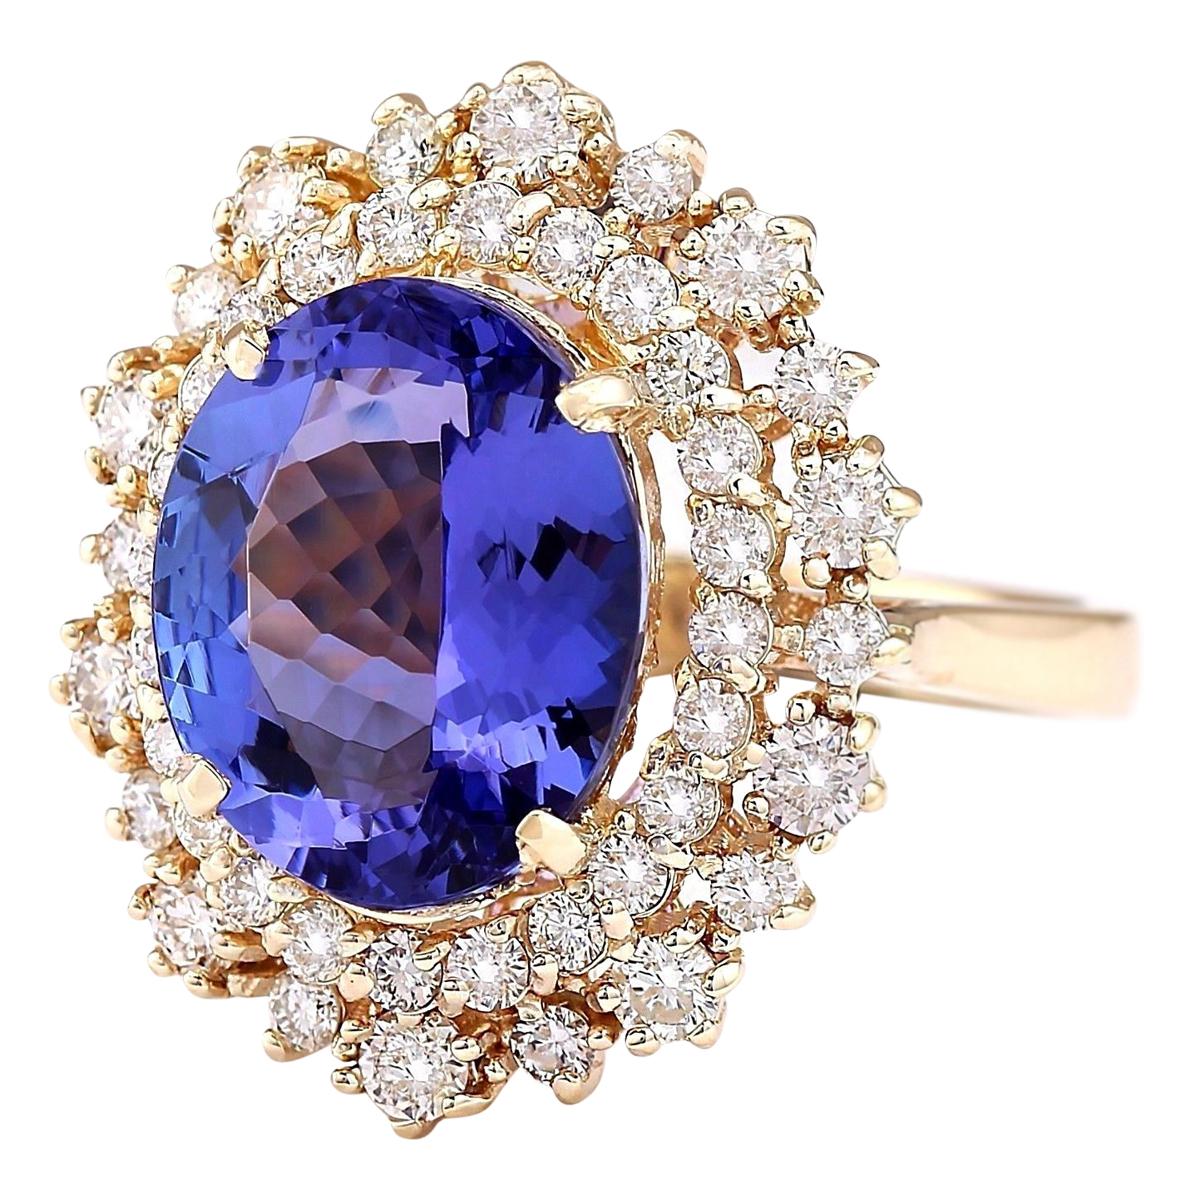 6.95 Carat Tanzanite 14 Karat Yellow Gold Diamond Ring
Stamped: 14K Yellow Gold
Total Ring Weight: 7.8 Grams
Total  Tanzanite Weight is 5.80 Carat (Measures: 14.00x10.00 mm)
Color: Blue
Total  Diamond Weight is 1.15 Carat
Color: F-G, Clarity: